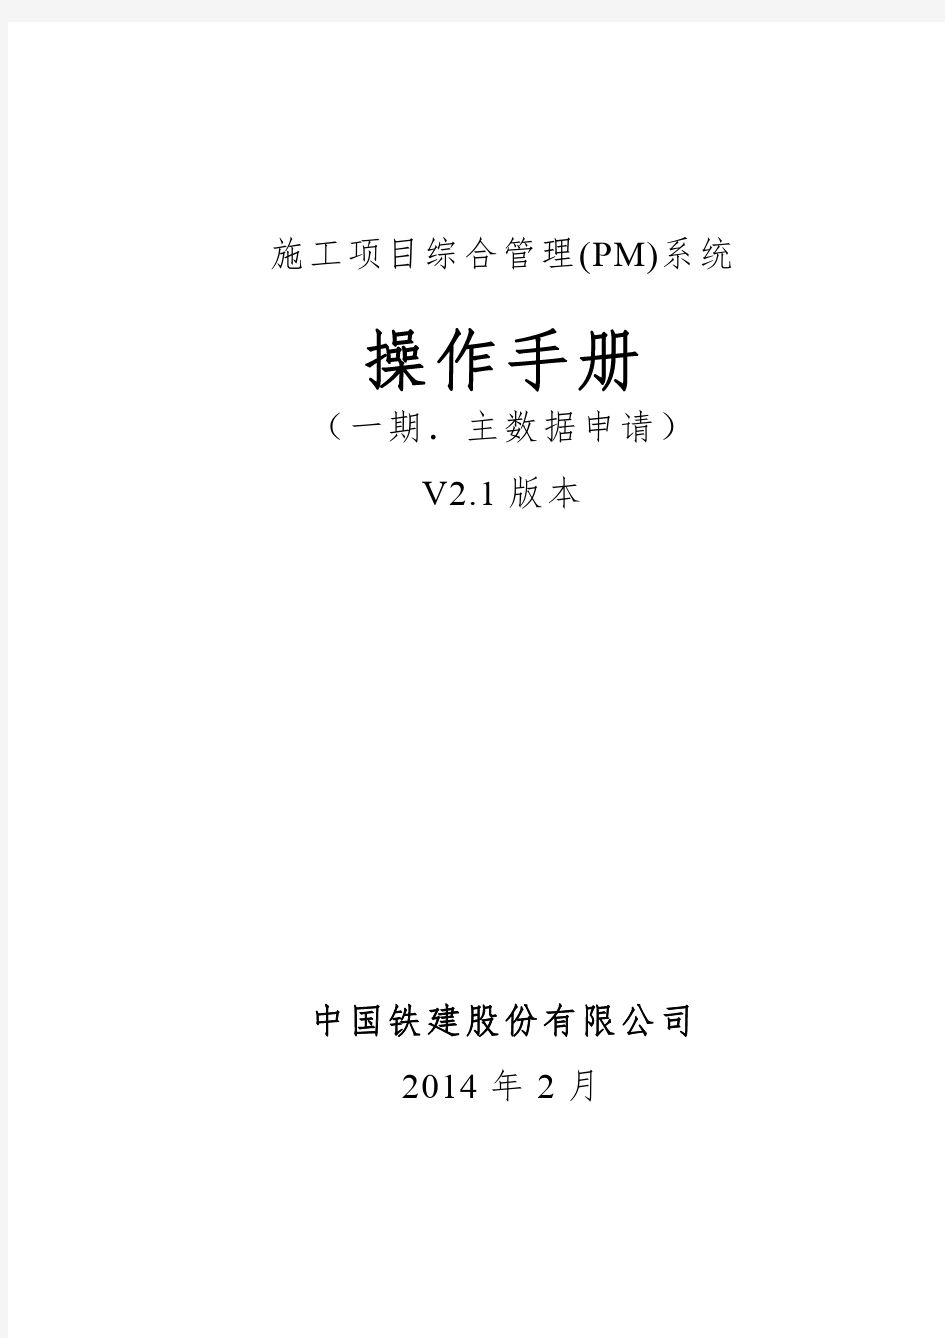 07-01操作手册(客商及主数据)V2.1